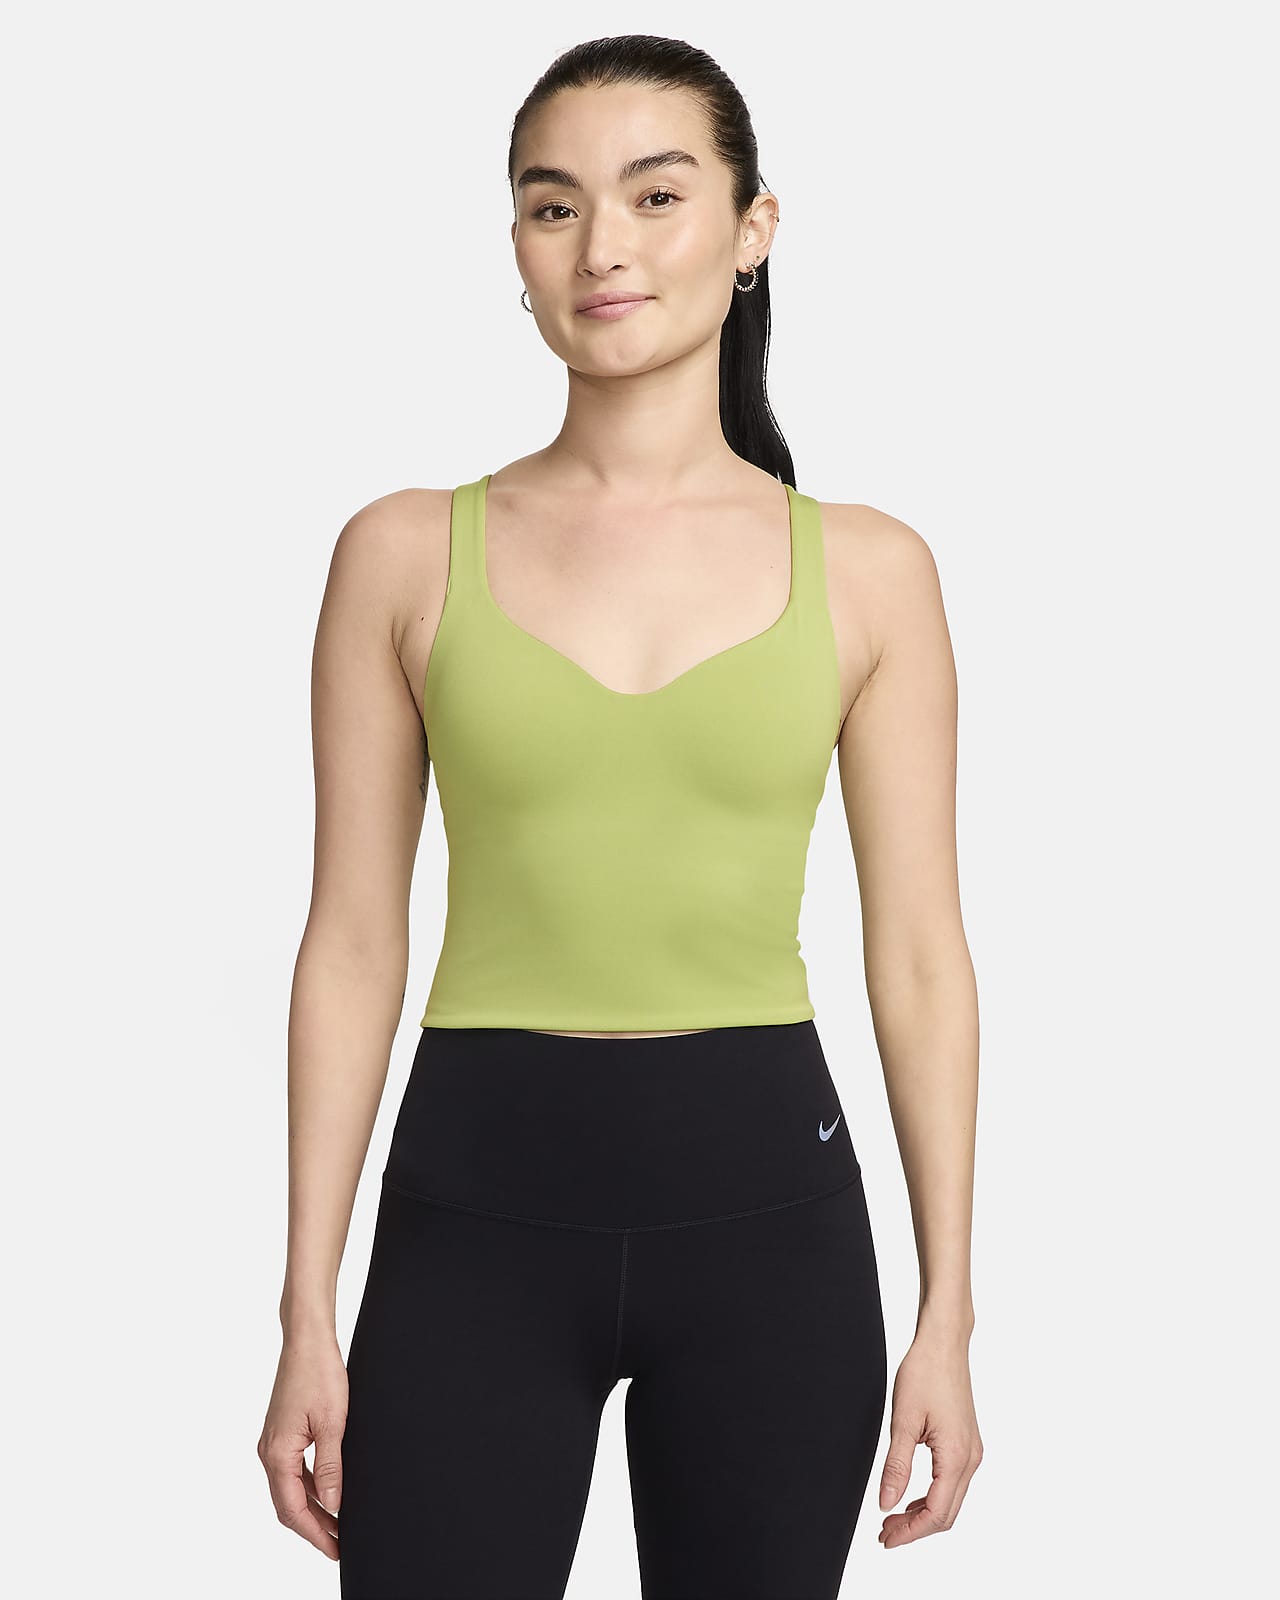 Nike Alate 女子速干中强度支撑衬垫运动内衣式背心